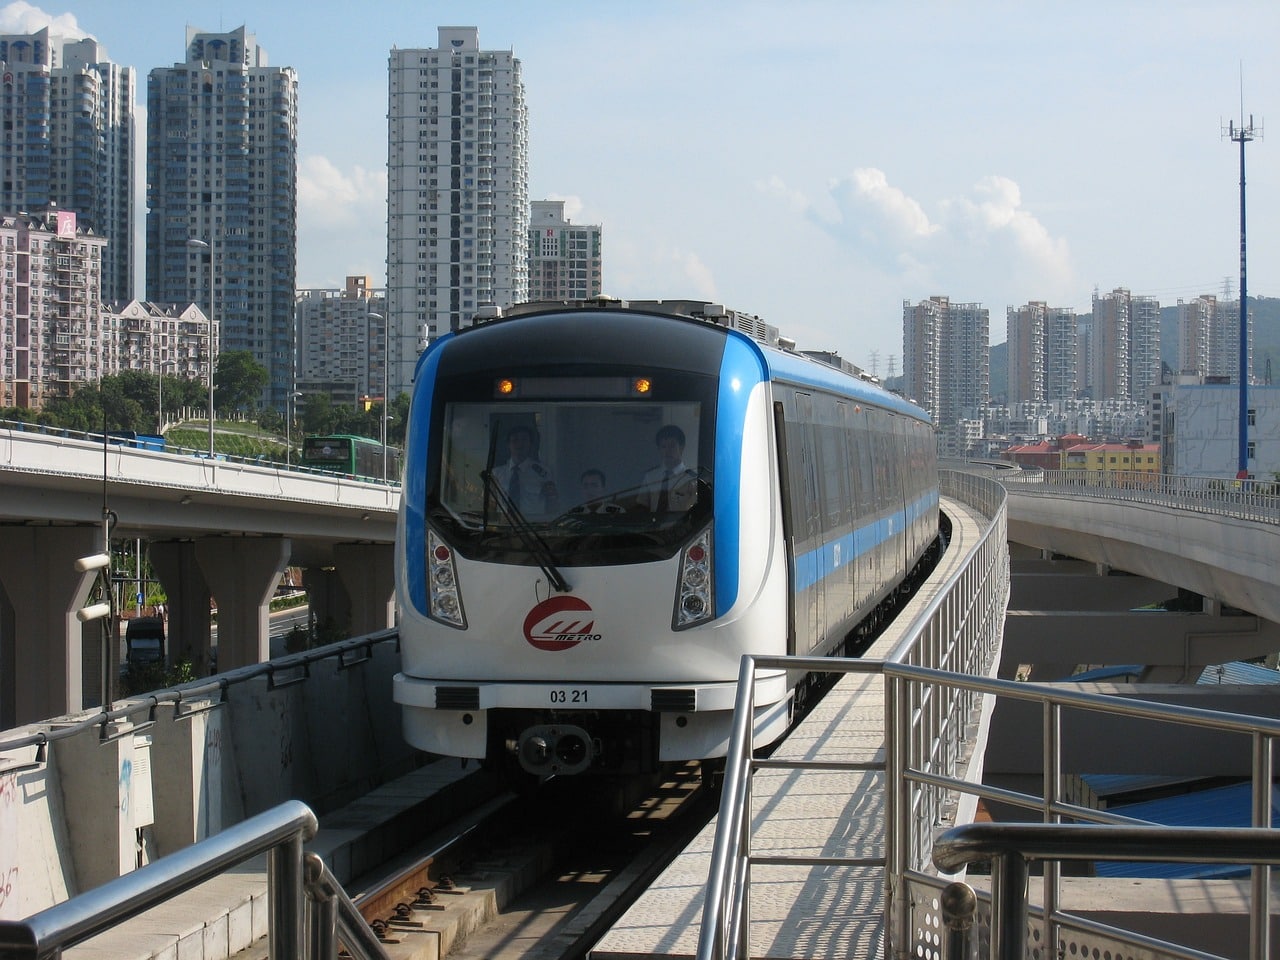 Shenzhen metro - Rapid transit